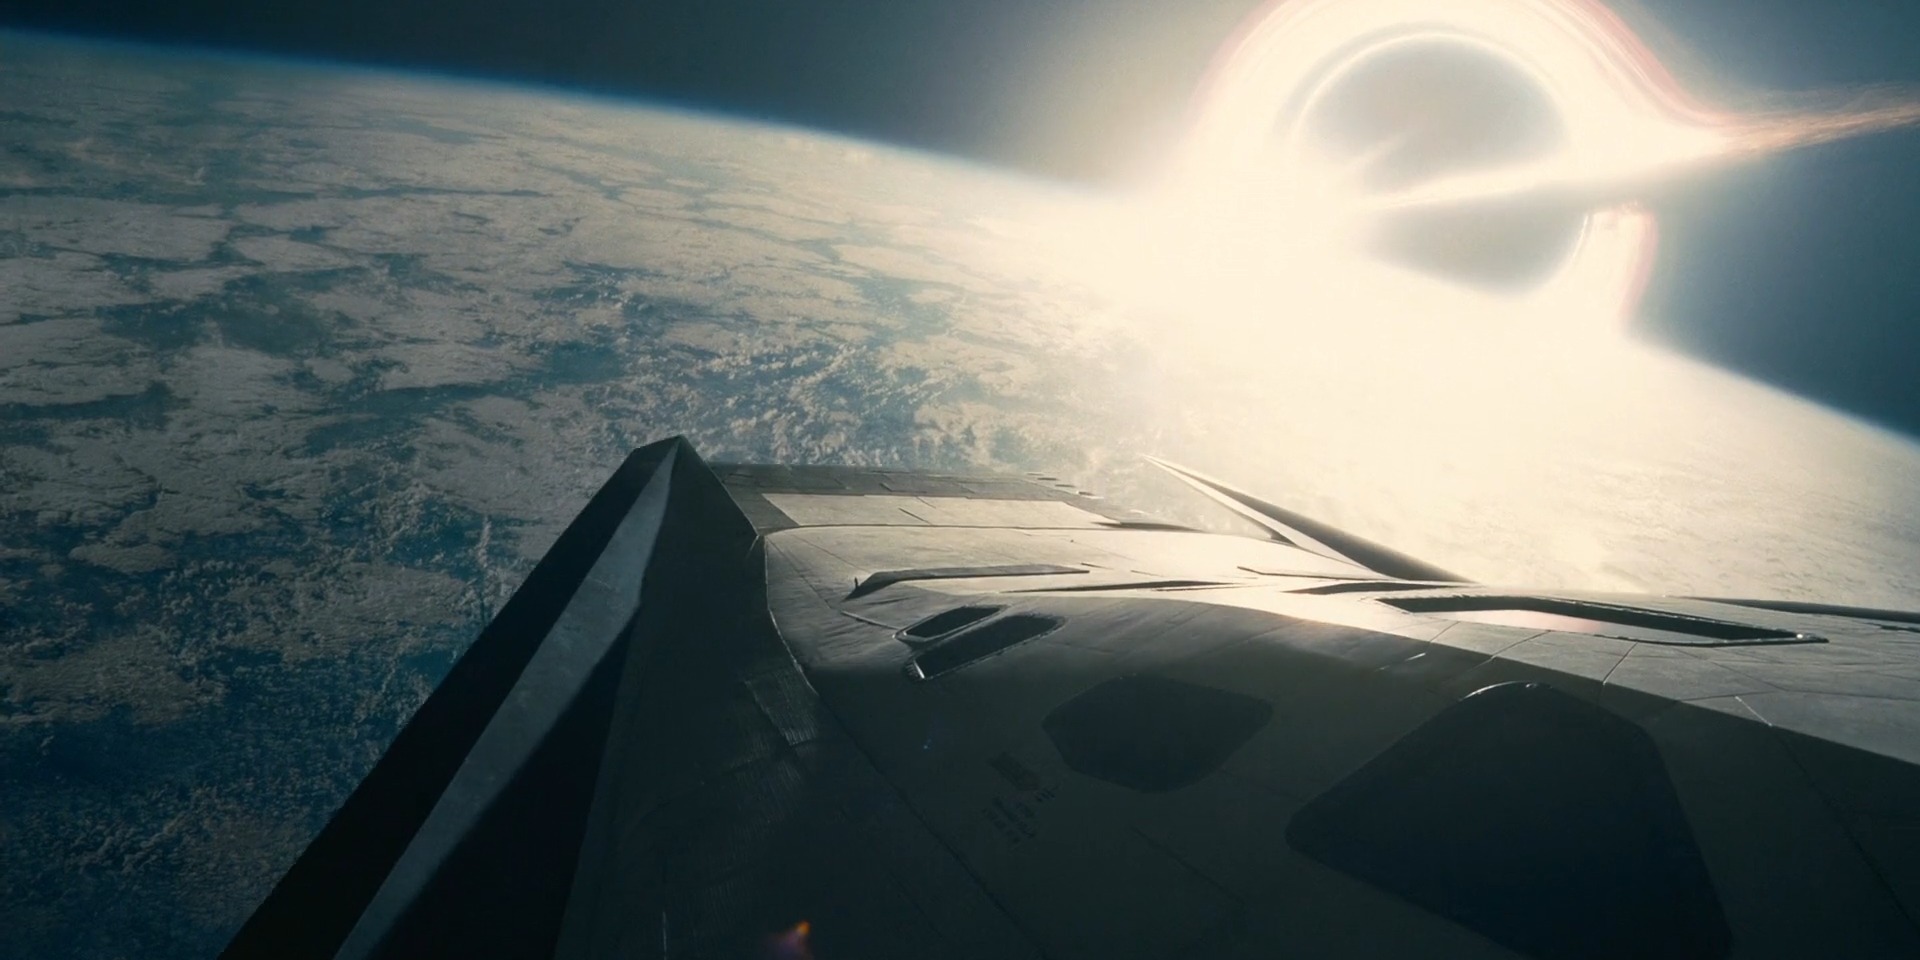 Наука в фильме «Интерстеллар»: Гаргантюа с орбиты планеты Миллер выглядит слишком маленькой